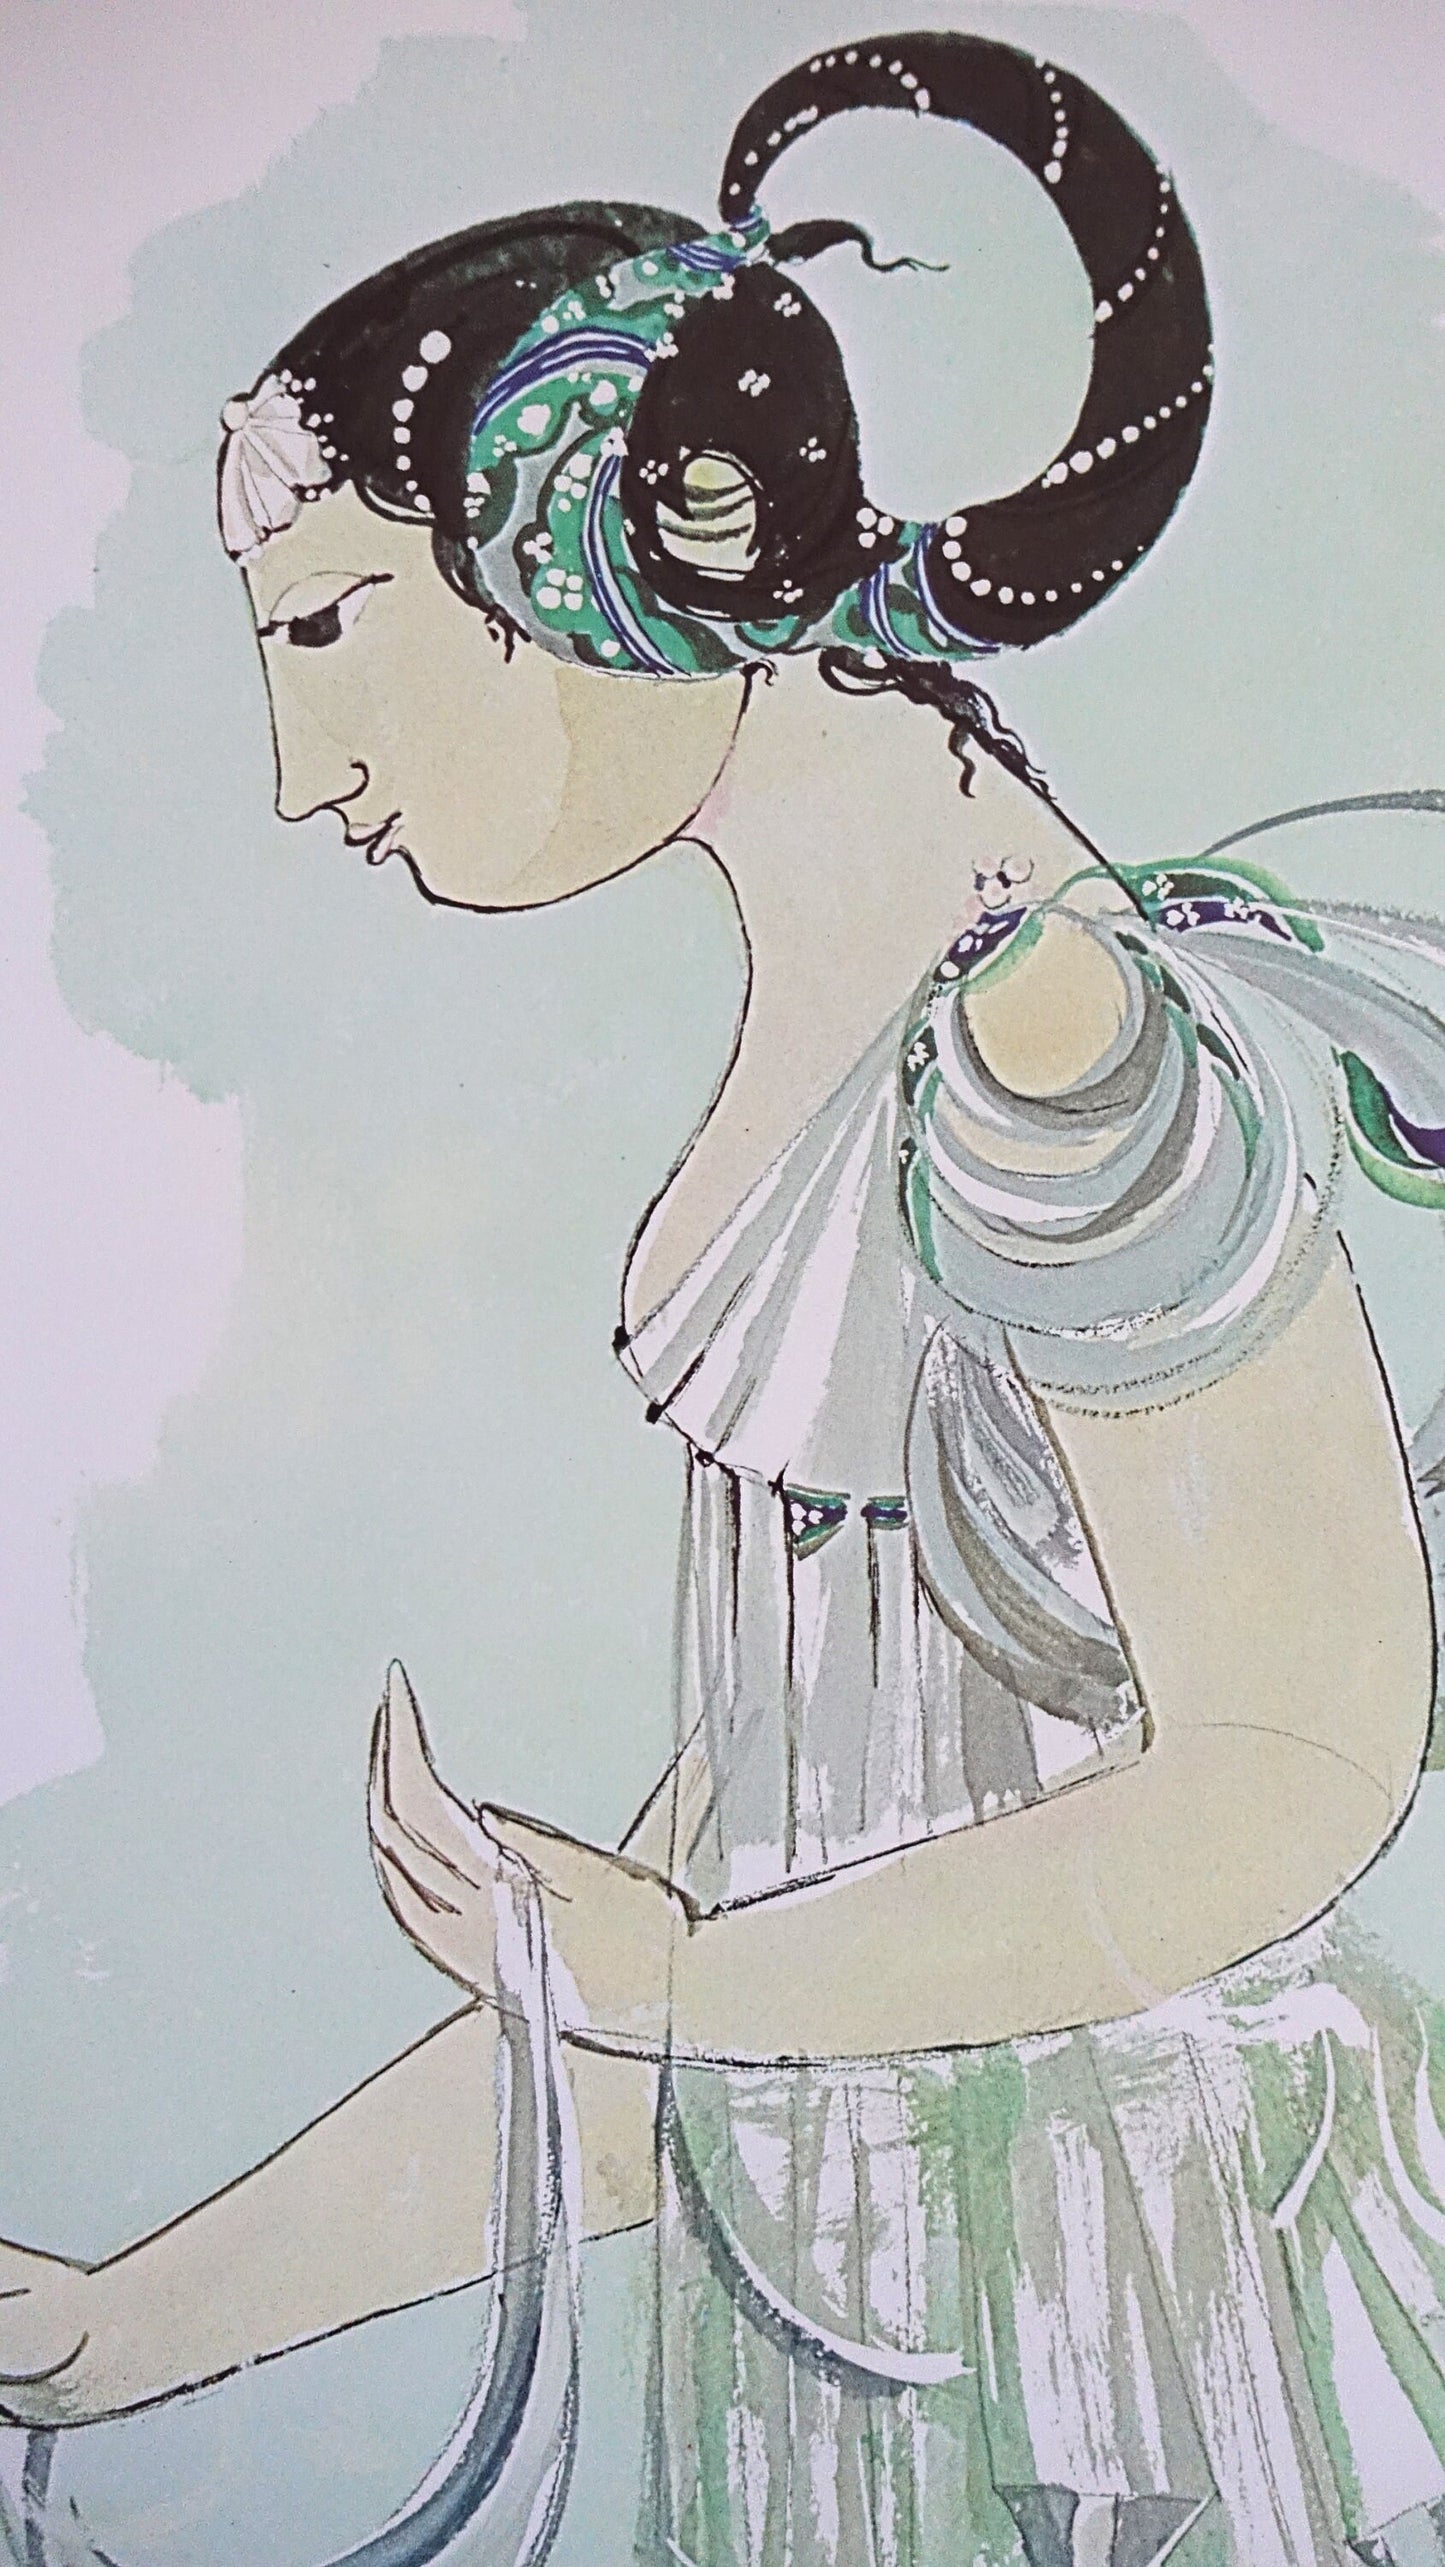 1970s "The Mermaid" - The Little Mermaid by Bjørn Wiinblad - Original Vintage Poster